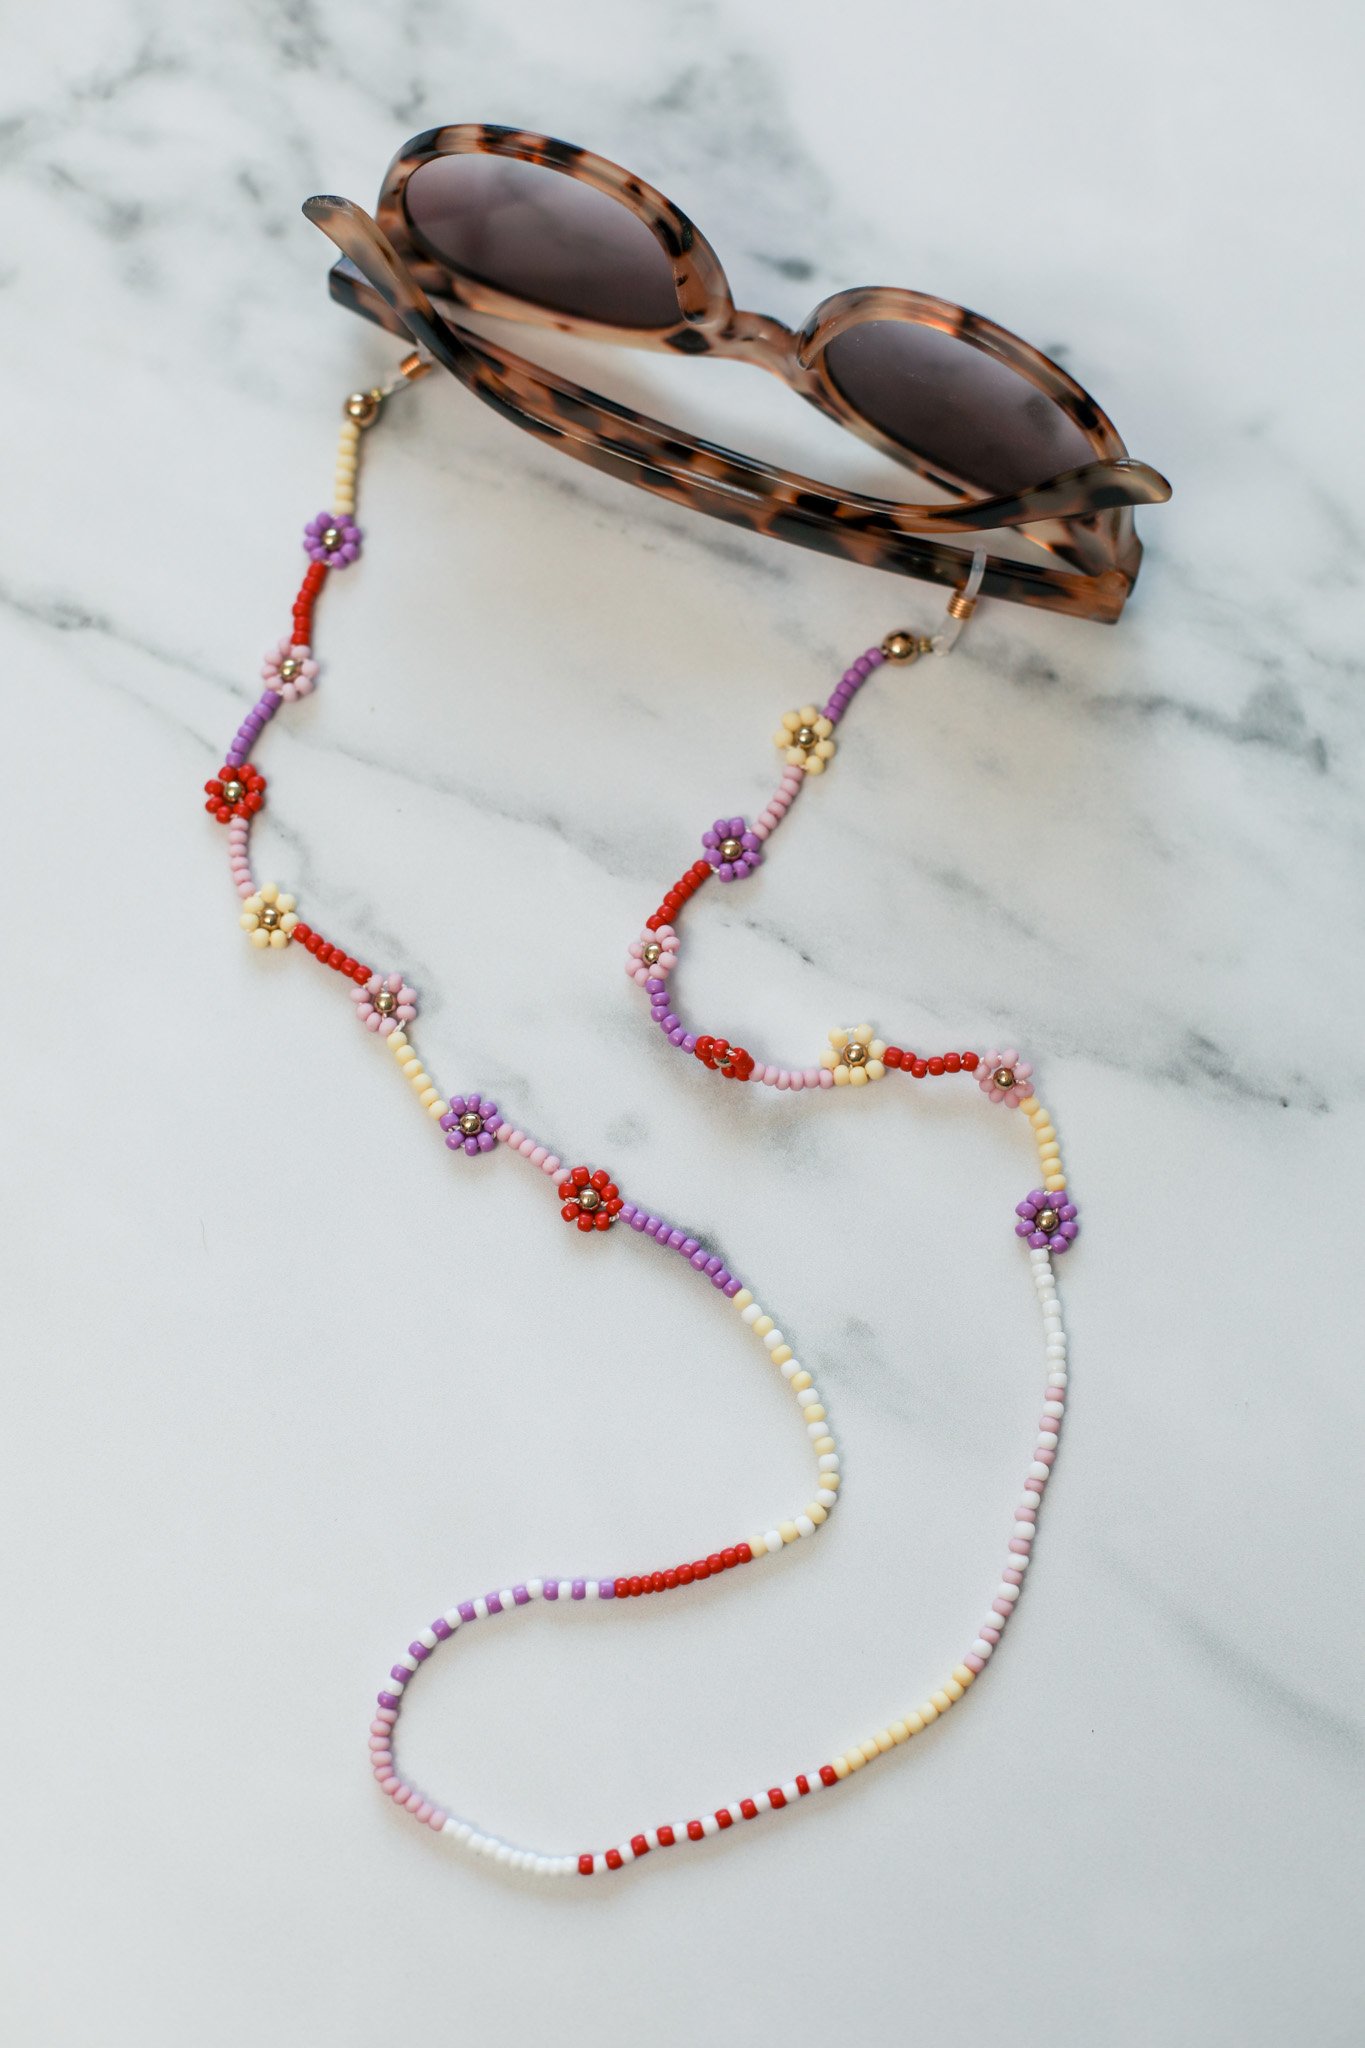 DIY Beaded Daisy Sunglasses Chain — Entertain the Idea